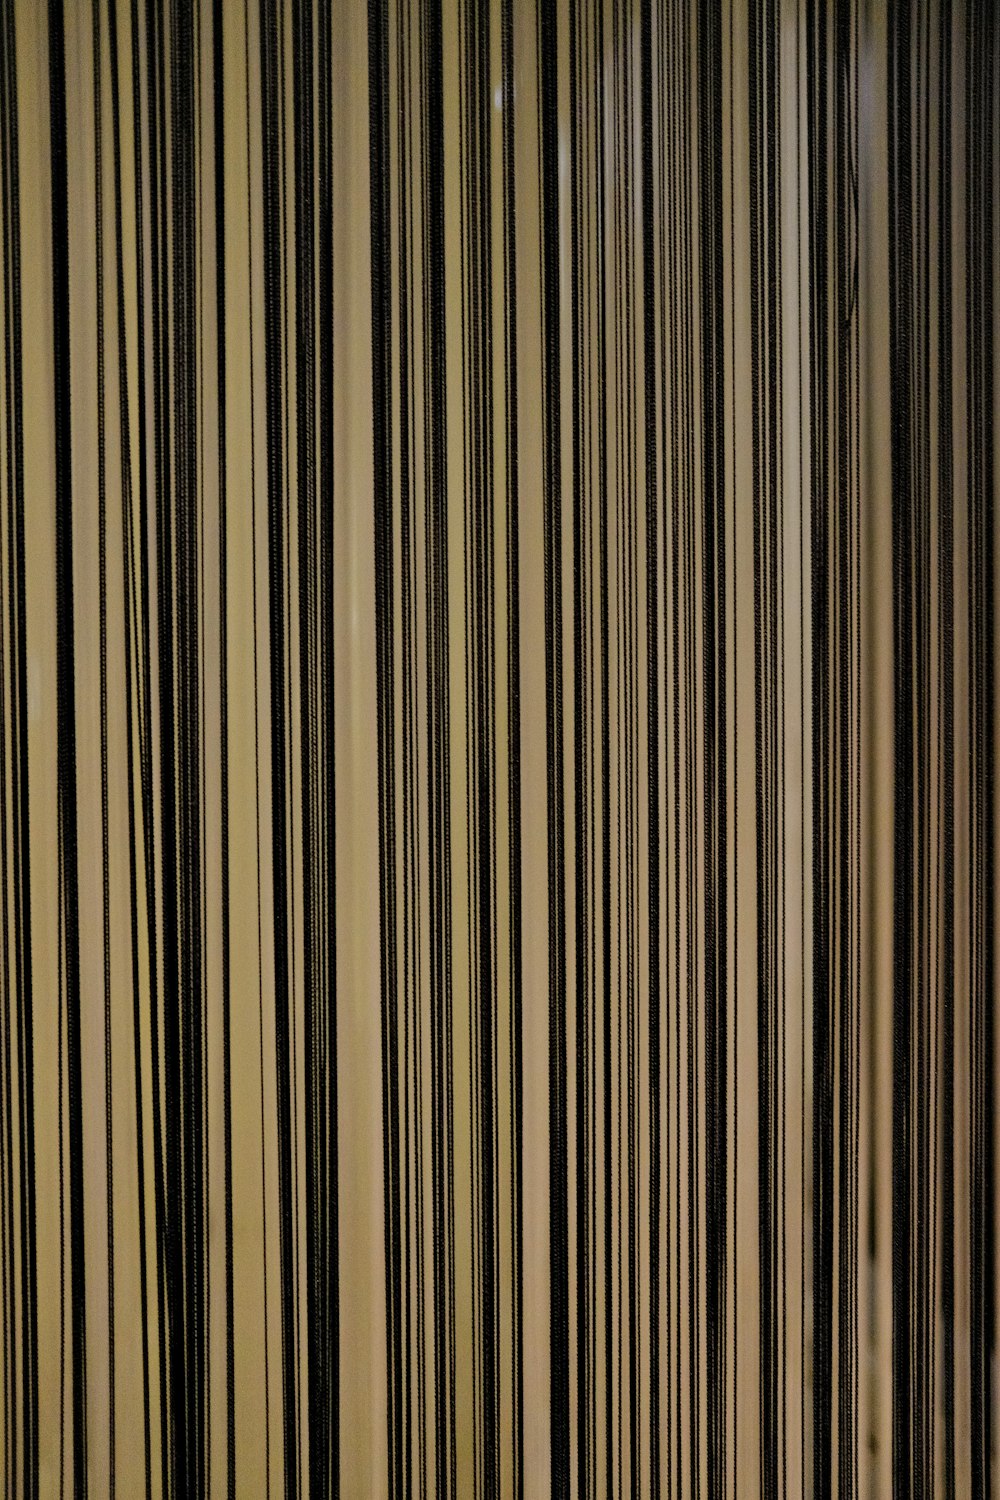 Una foto en blanco y negro de una cortina